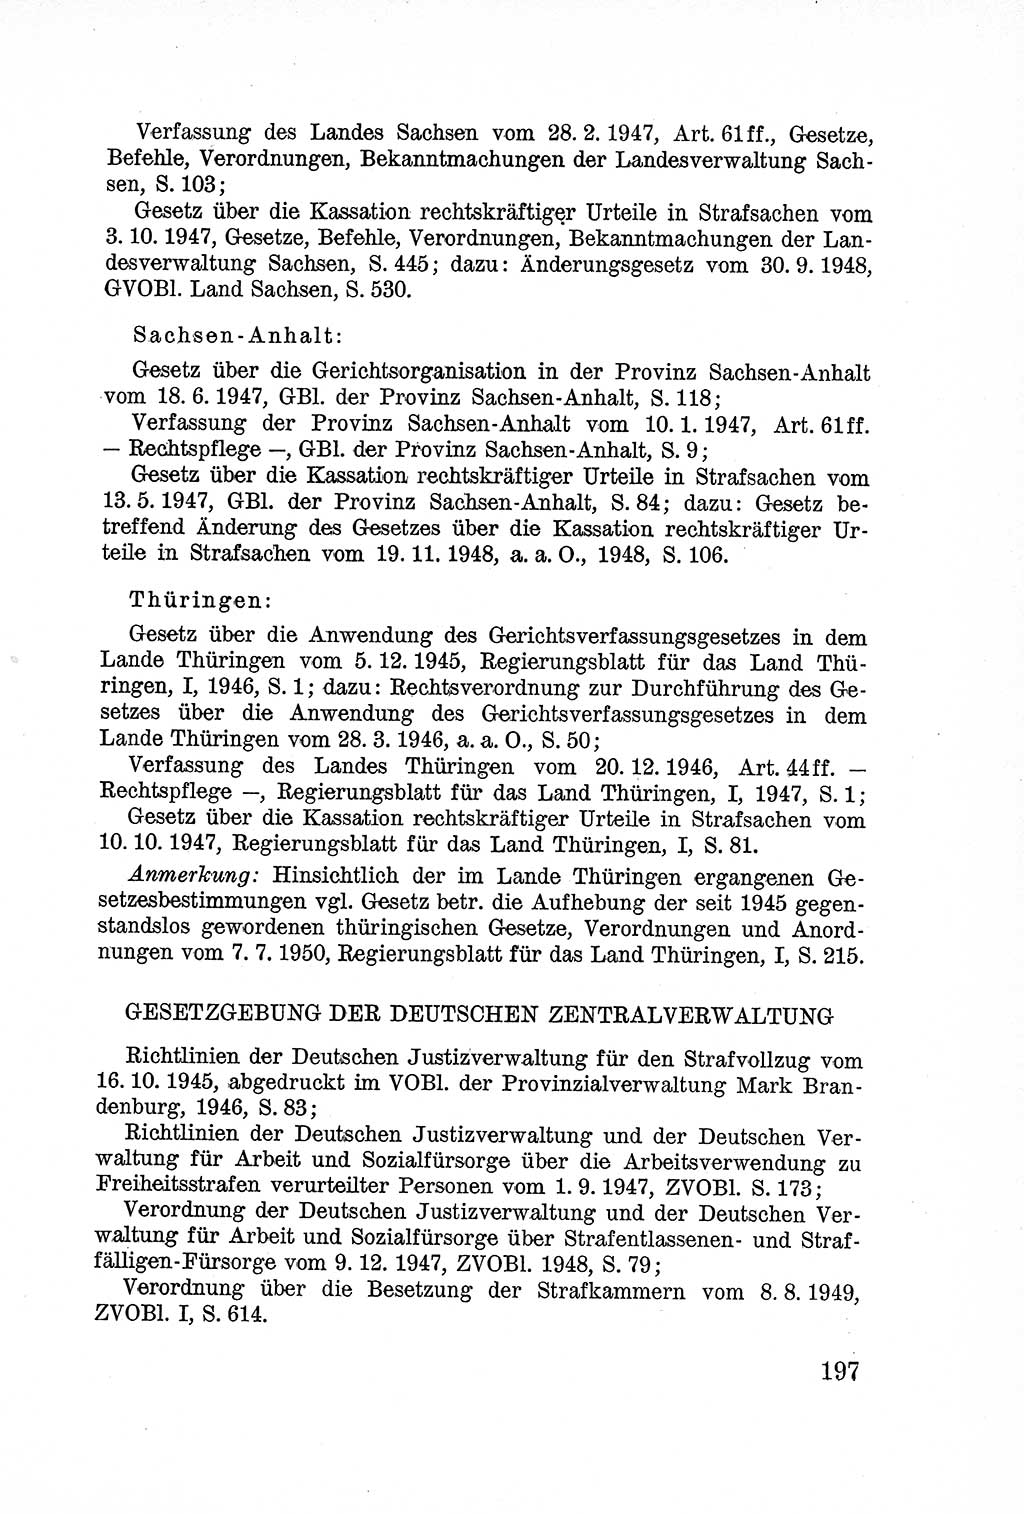 Lehrbuch des Strafrechts der Deutschen Demokratischen Republik (DDR), Allgemeiner Teil 1957, Seite 197 (Lb. Strafr. DDR AT 1957, S. 197)